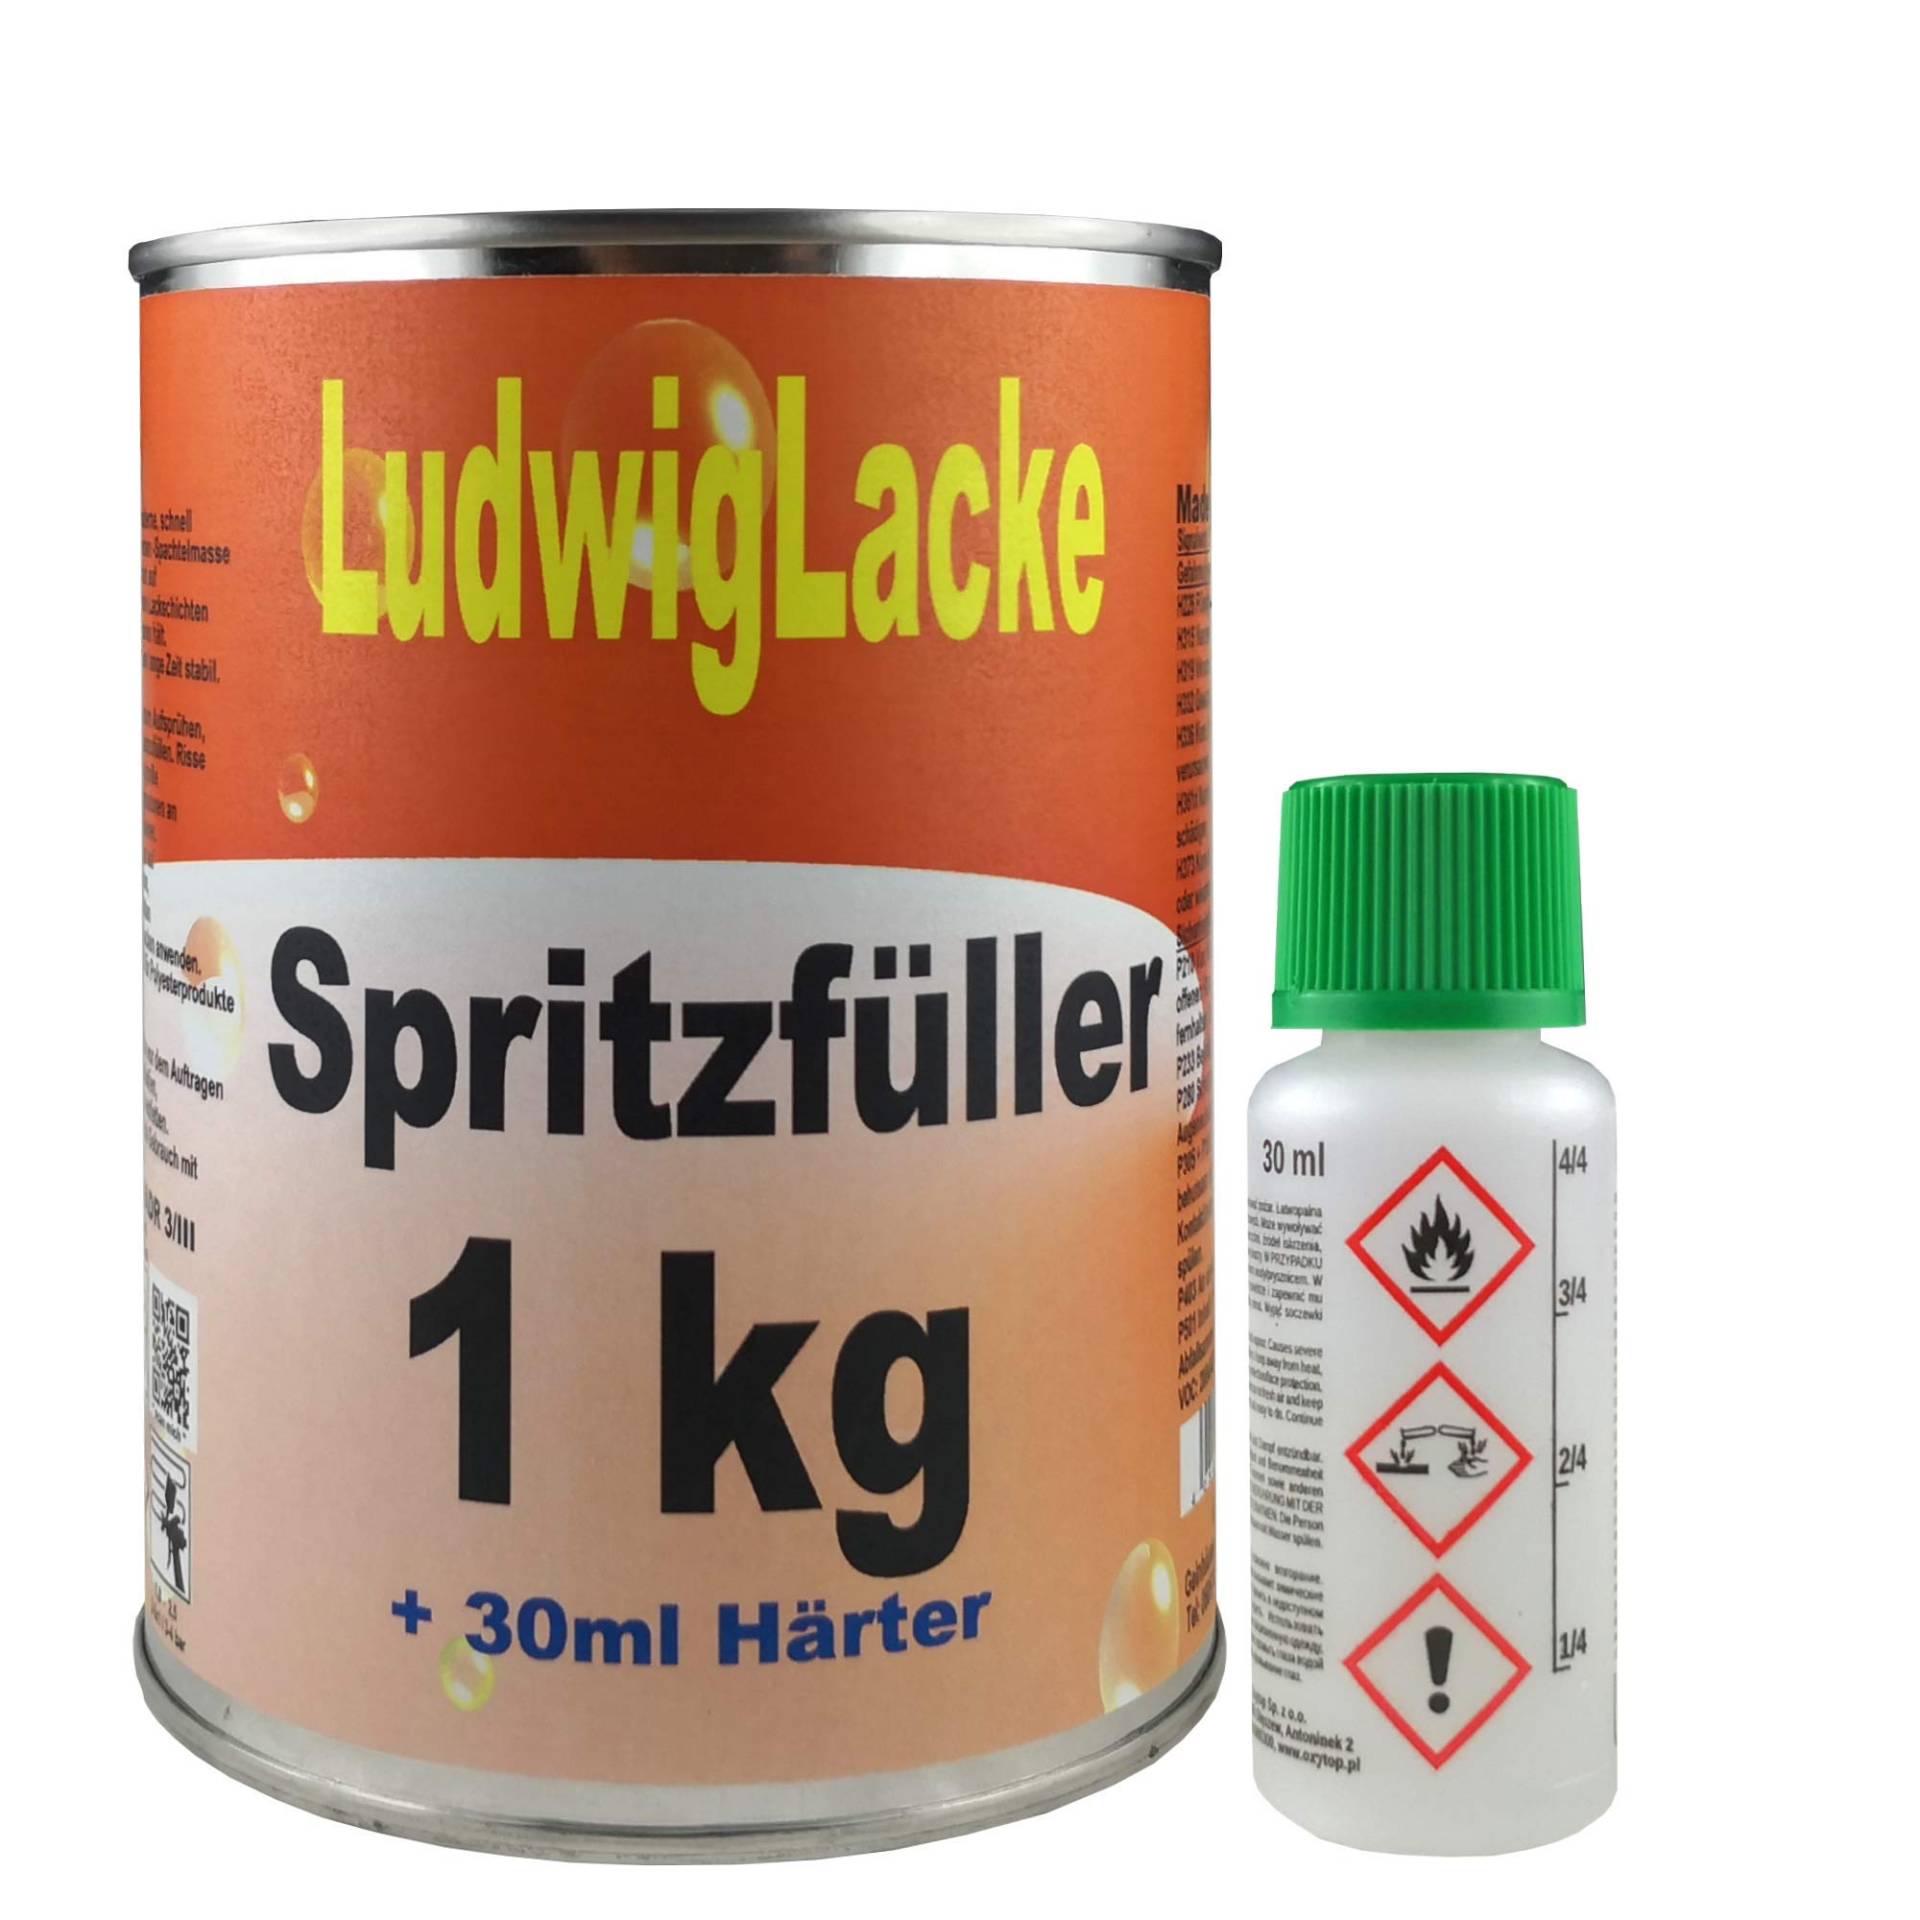 Spritzfüller1kg inkl. Härter von Ludwiglacke